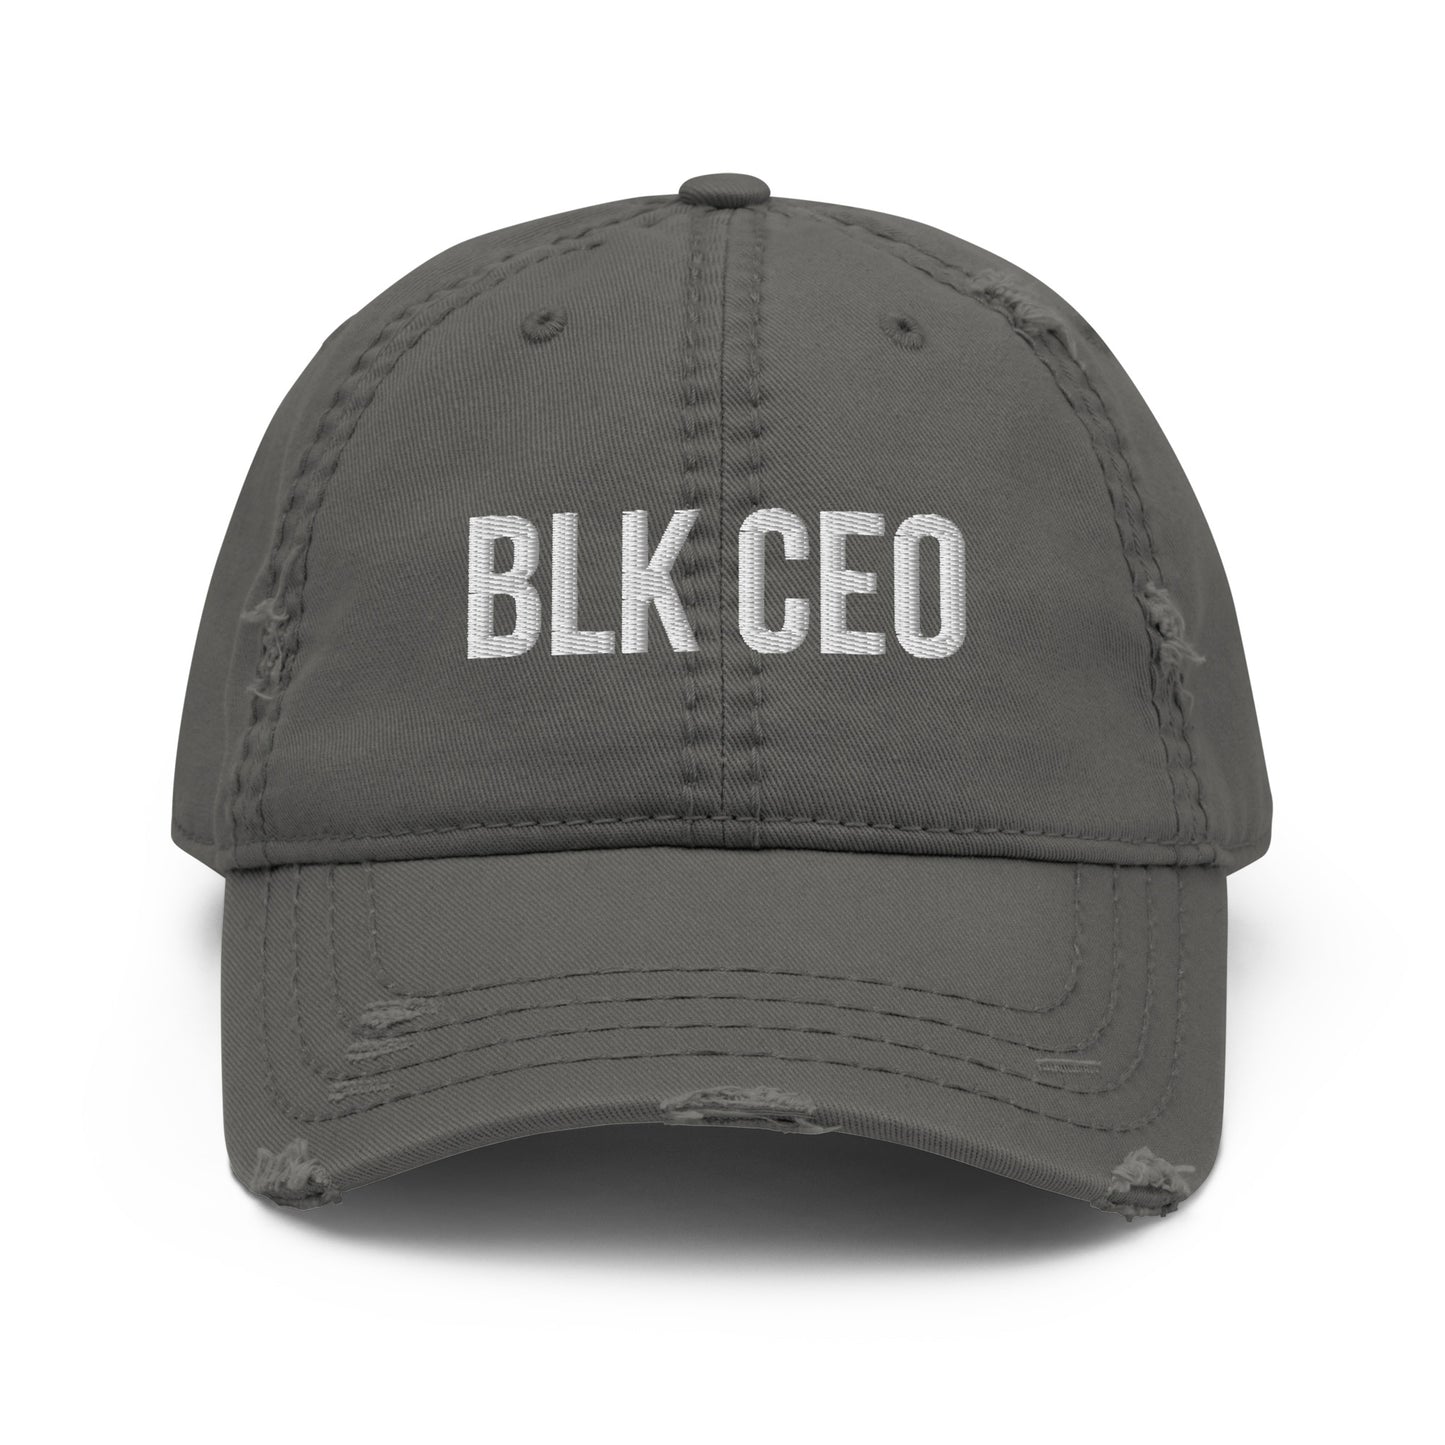 BLK CEO Distressed Dad Hat